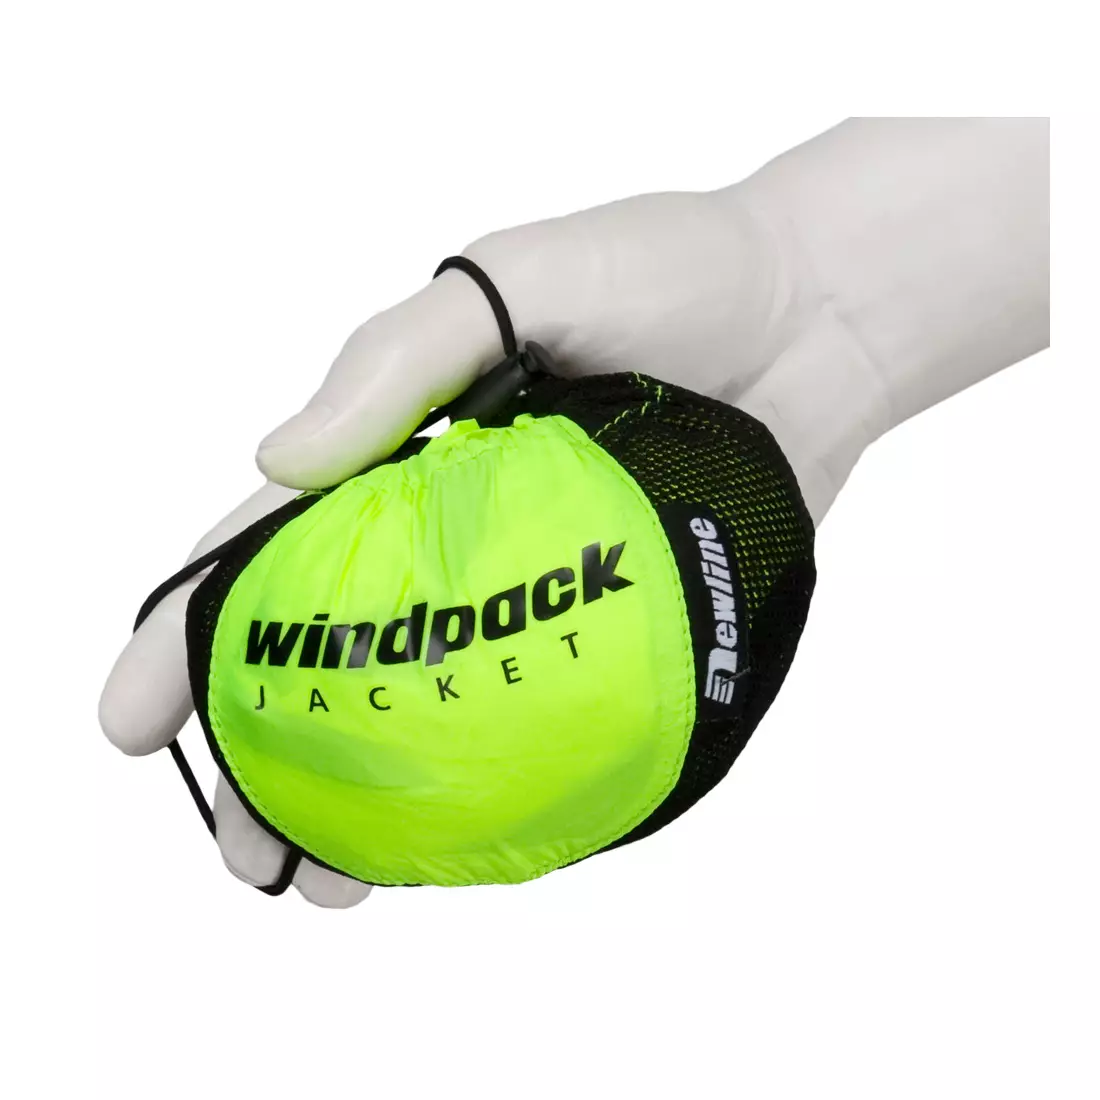 NEWLINE WINDPACK JACKET - ultra-light sports windbreaker 14176-090, color: Fluor